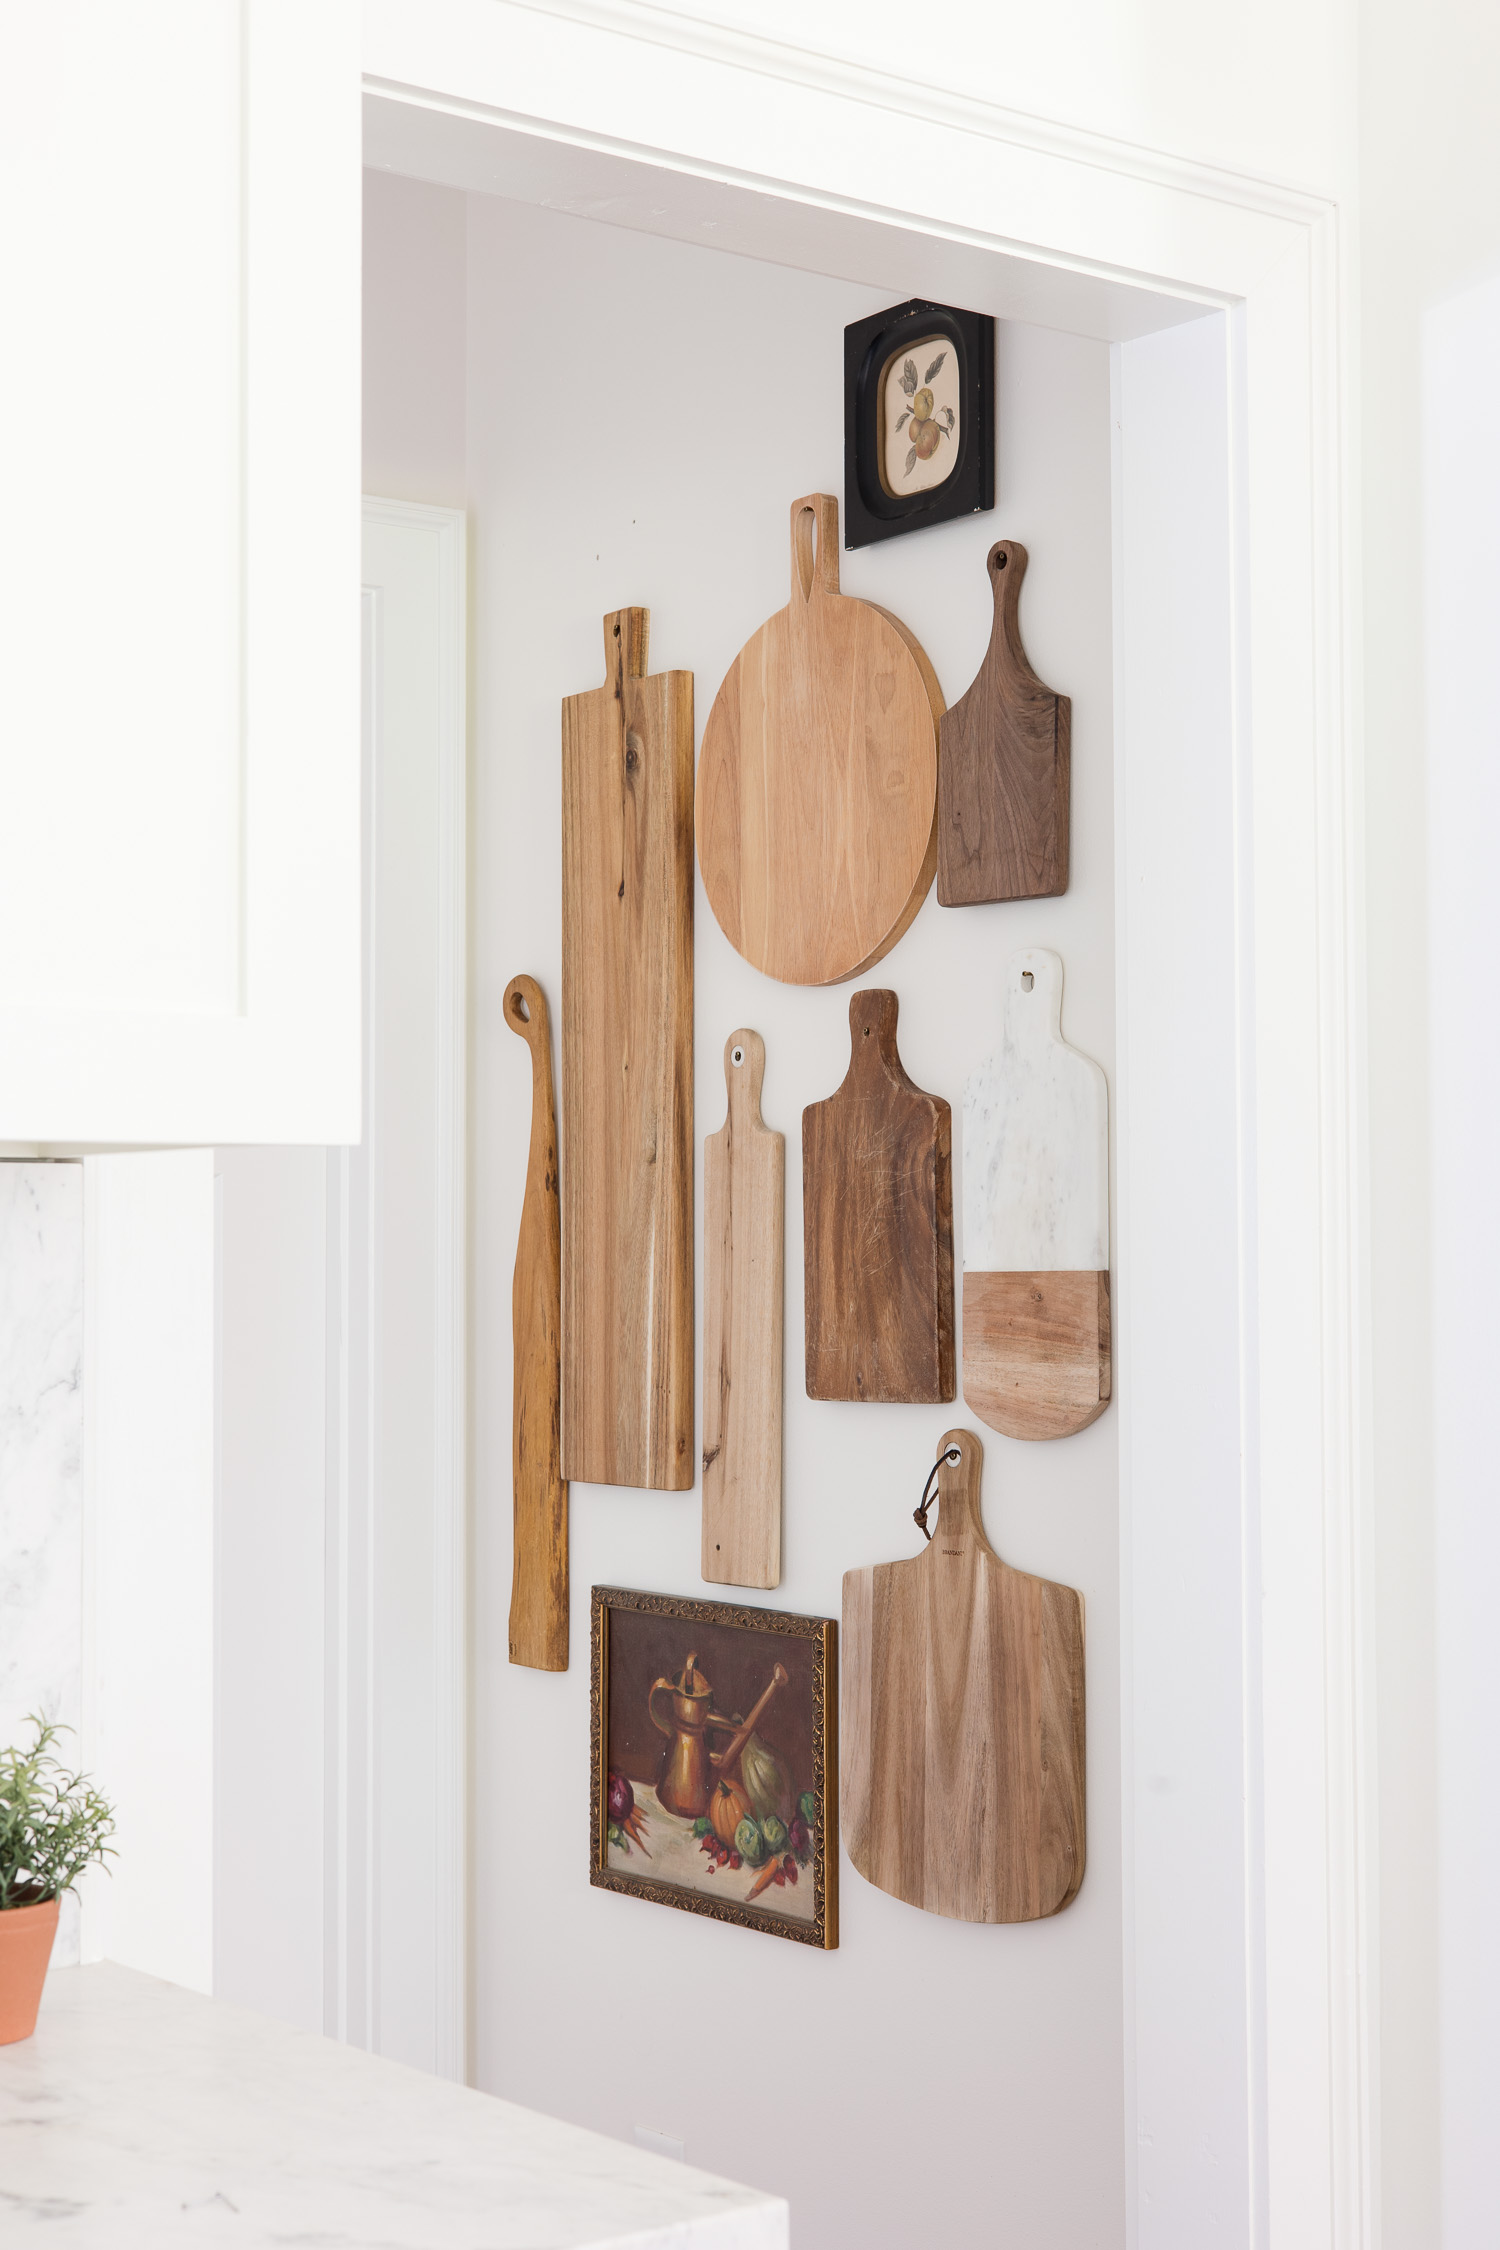 Wood cutting board wall gallery